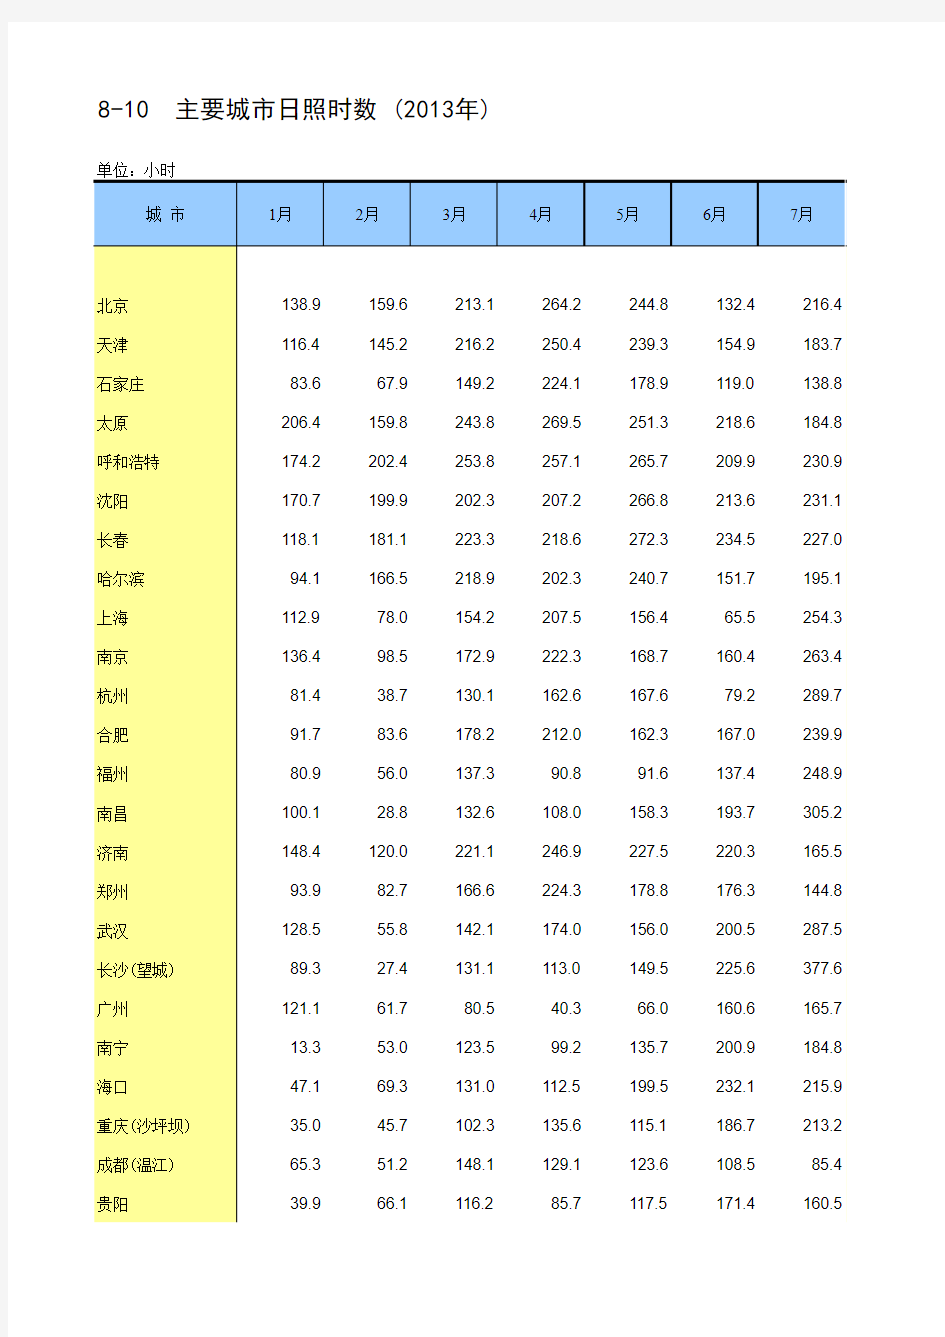 中国统计年鉴2014主要城市日照时数-(2013年)